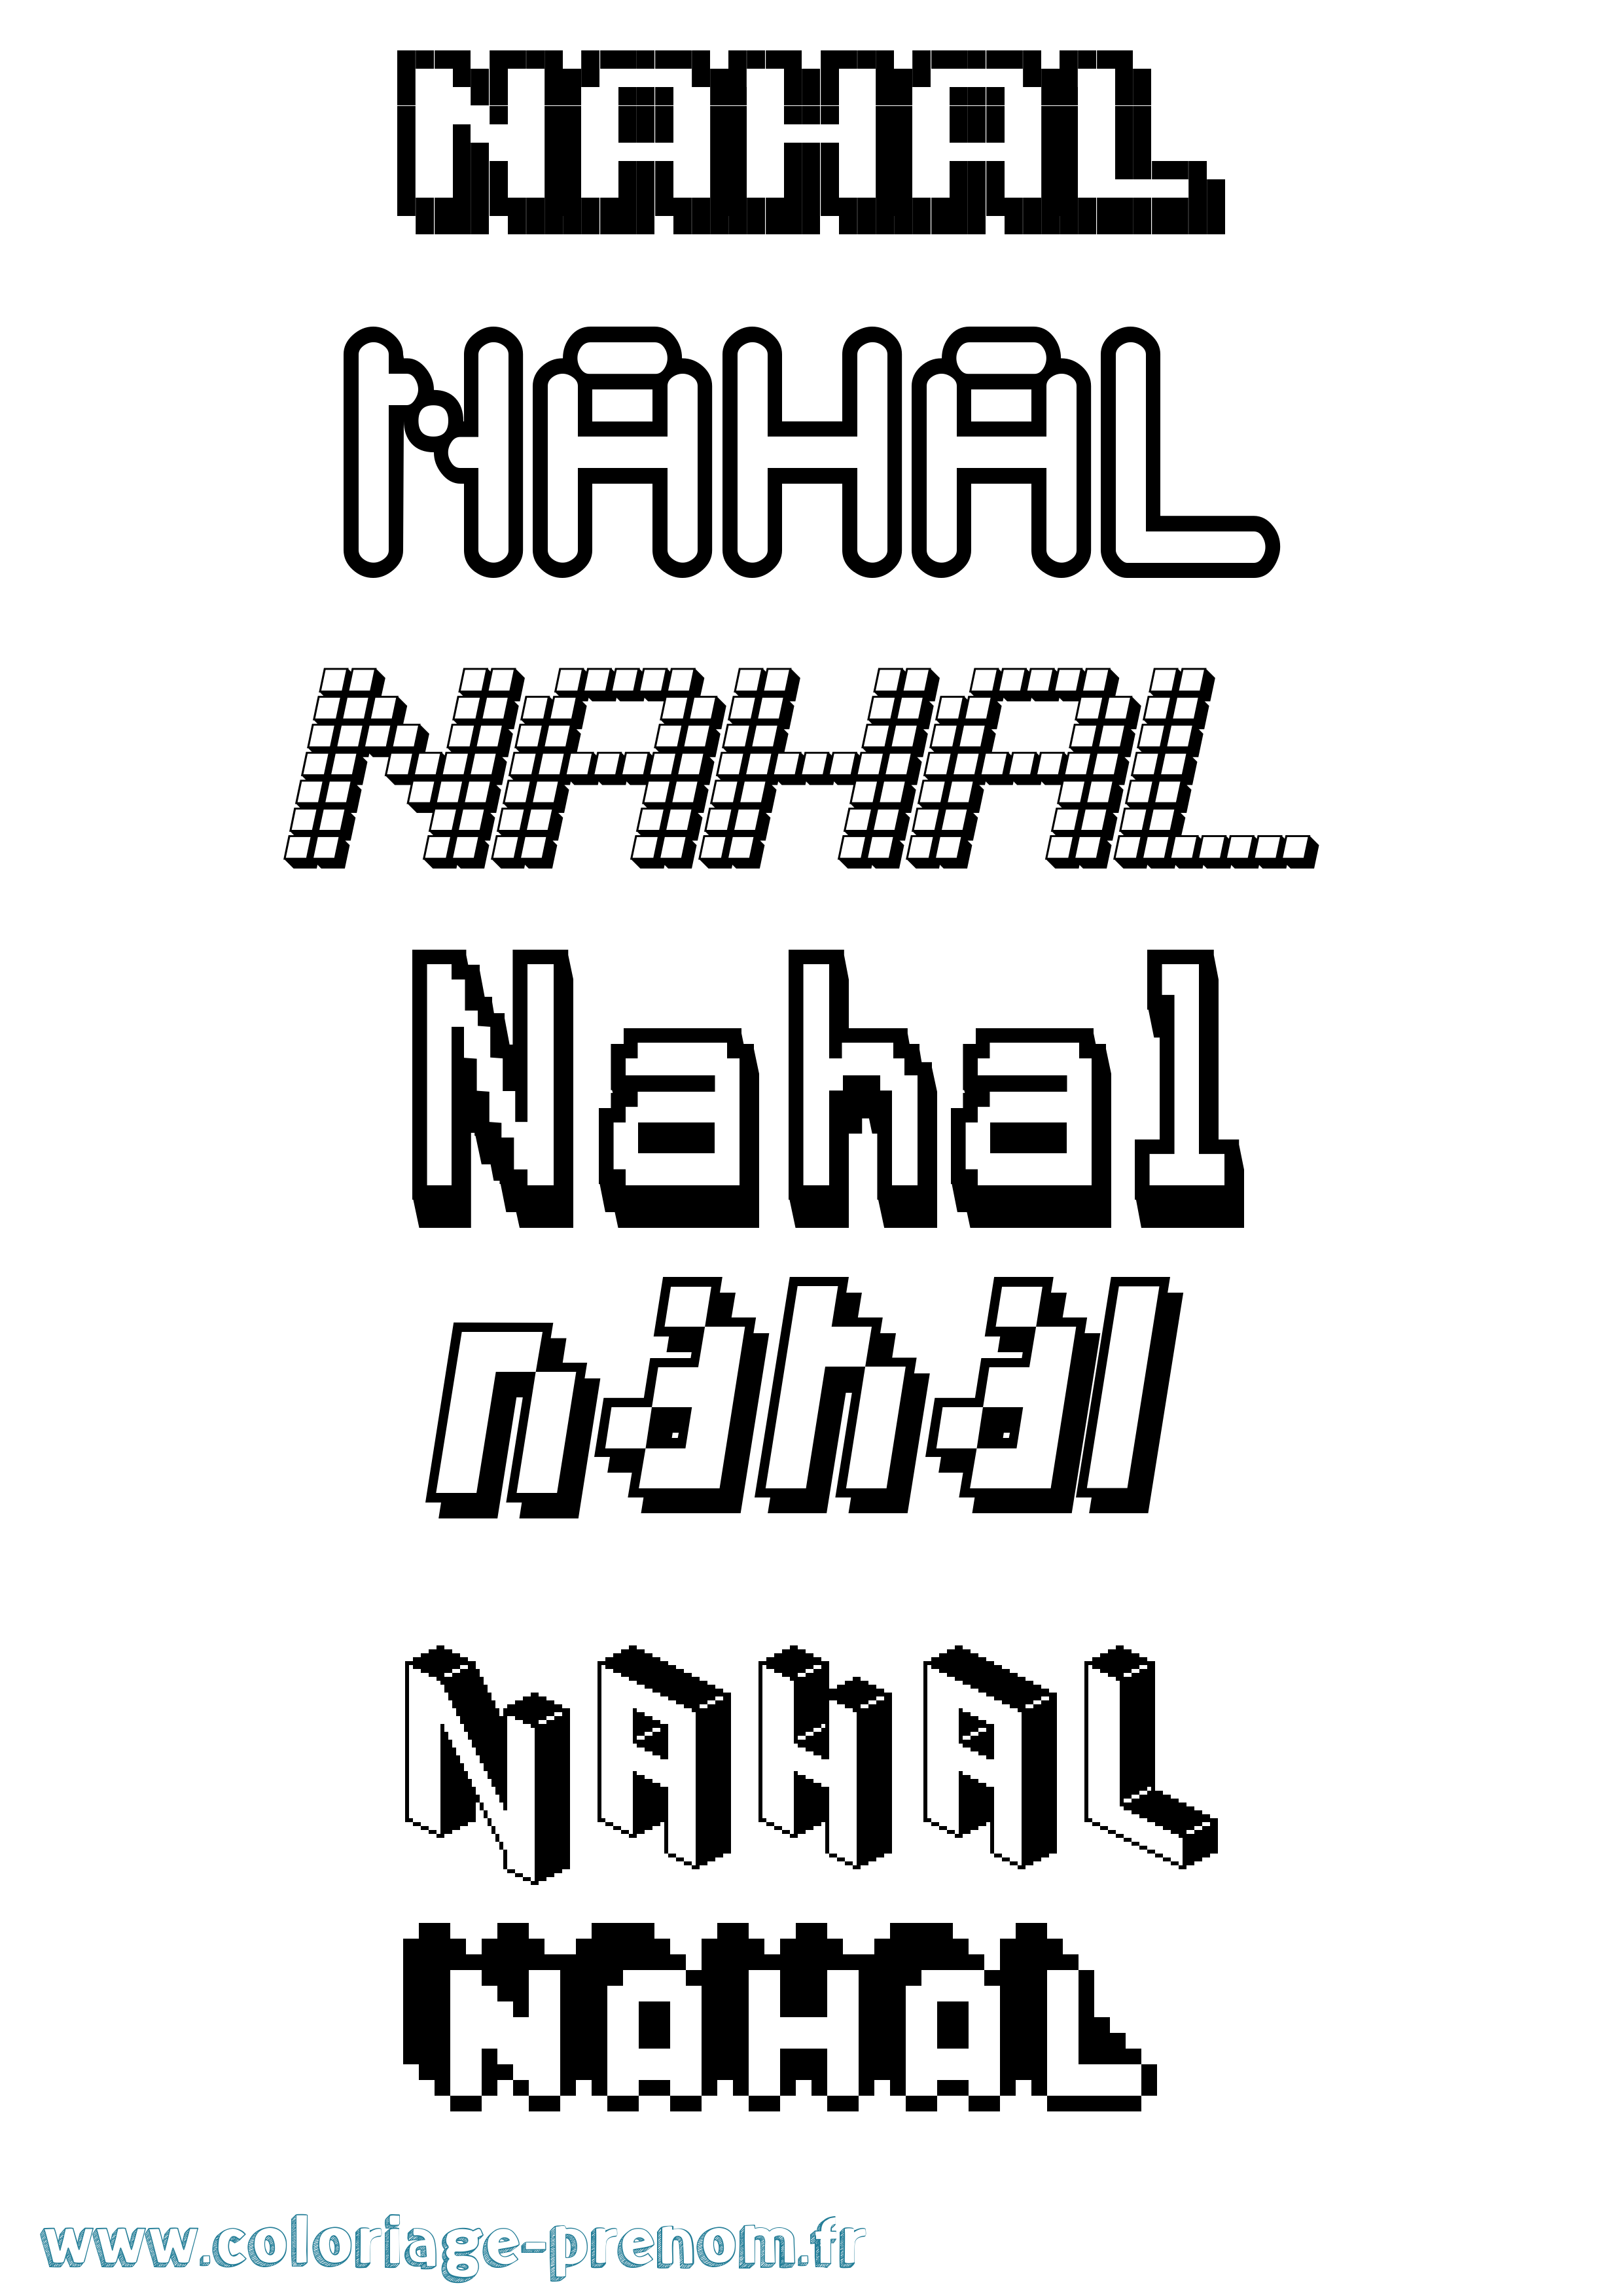 Coloriage prénom Nahal Pixel